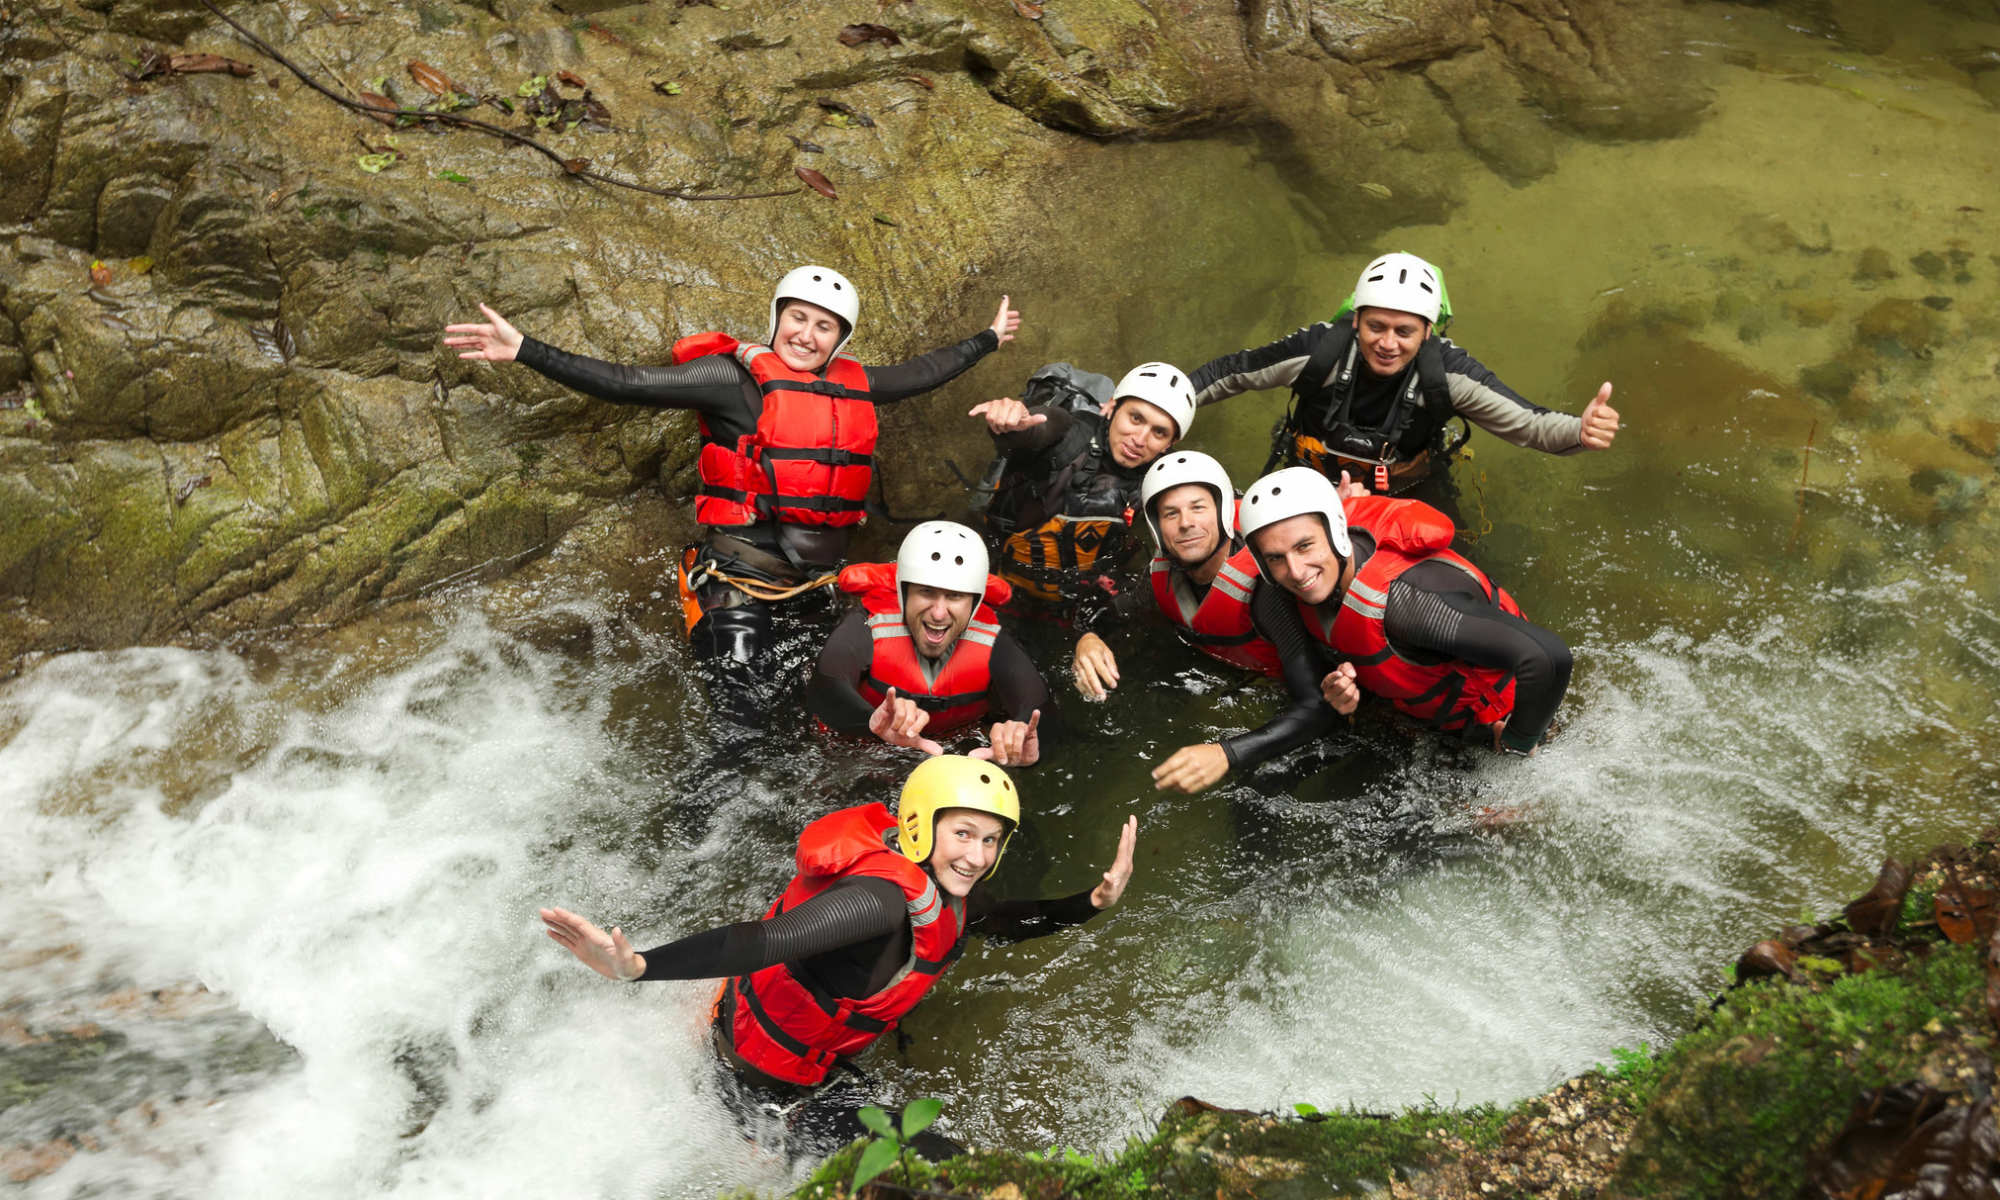 Un groupe d’amis tout sourire dans l’eau tumultueuse d’un canyon.